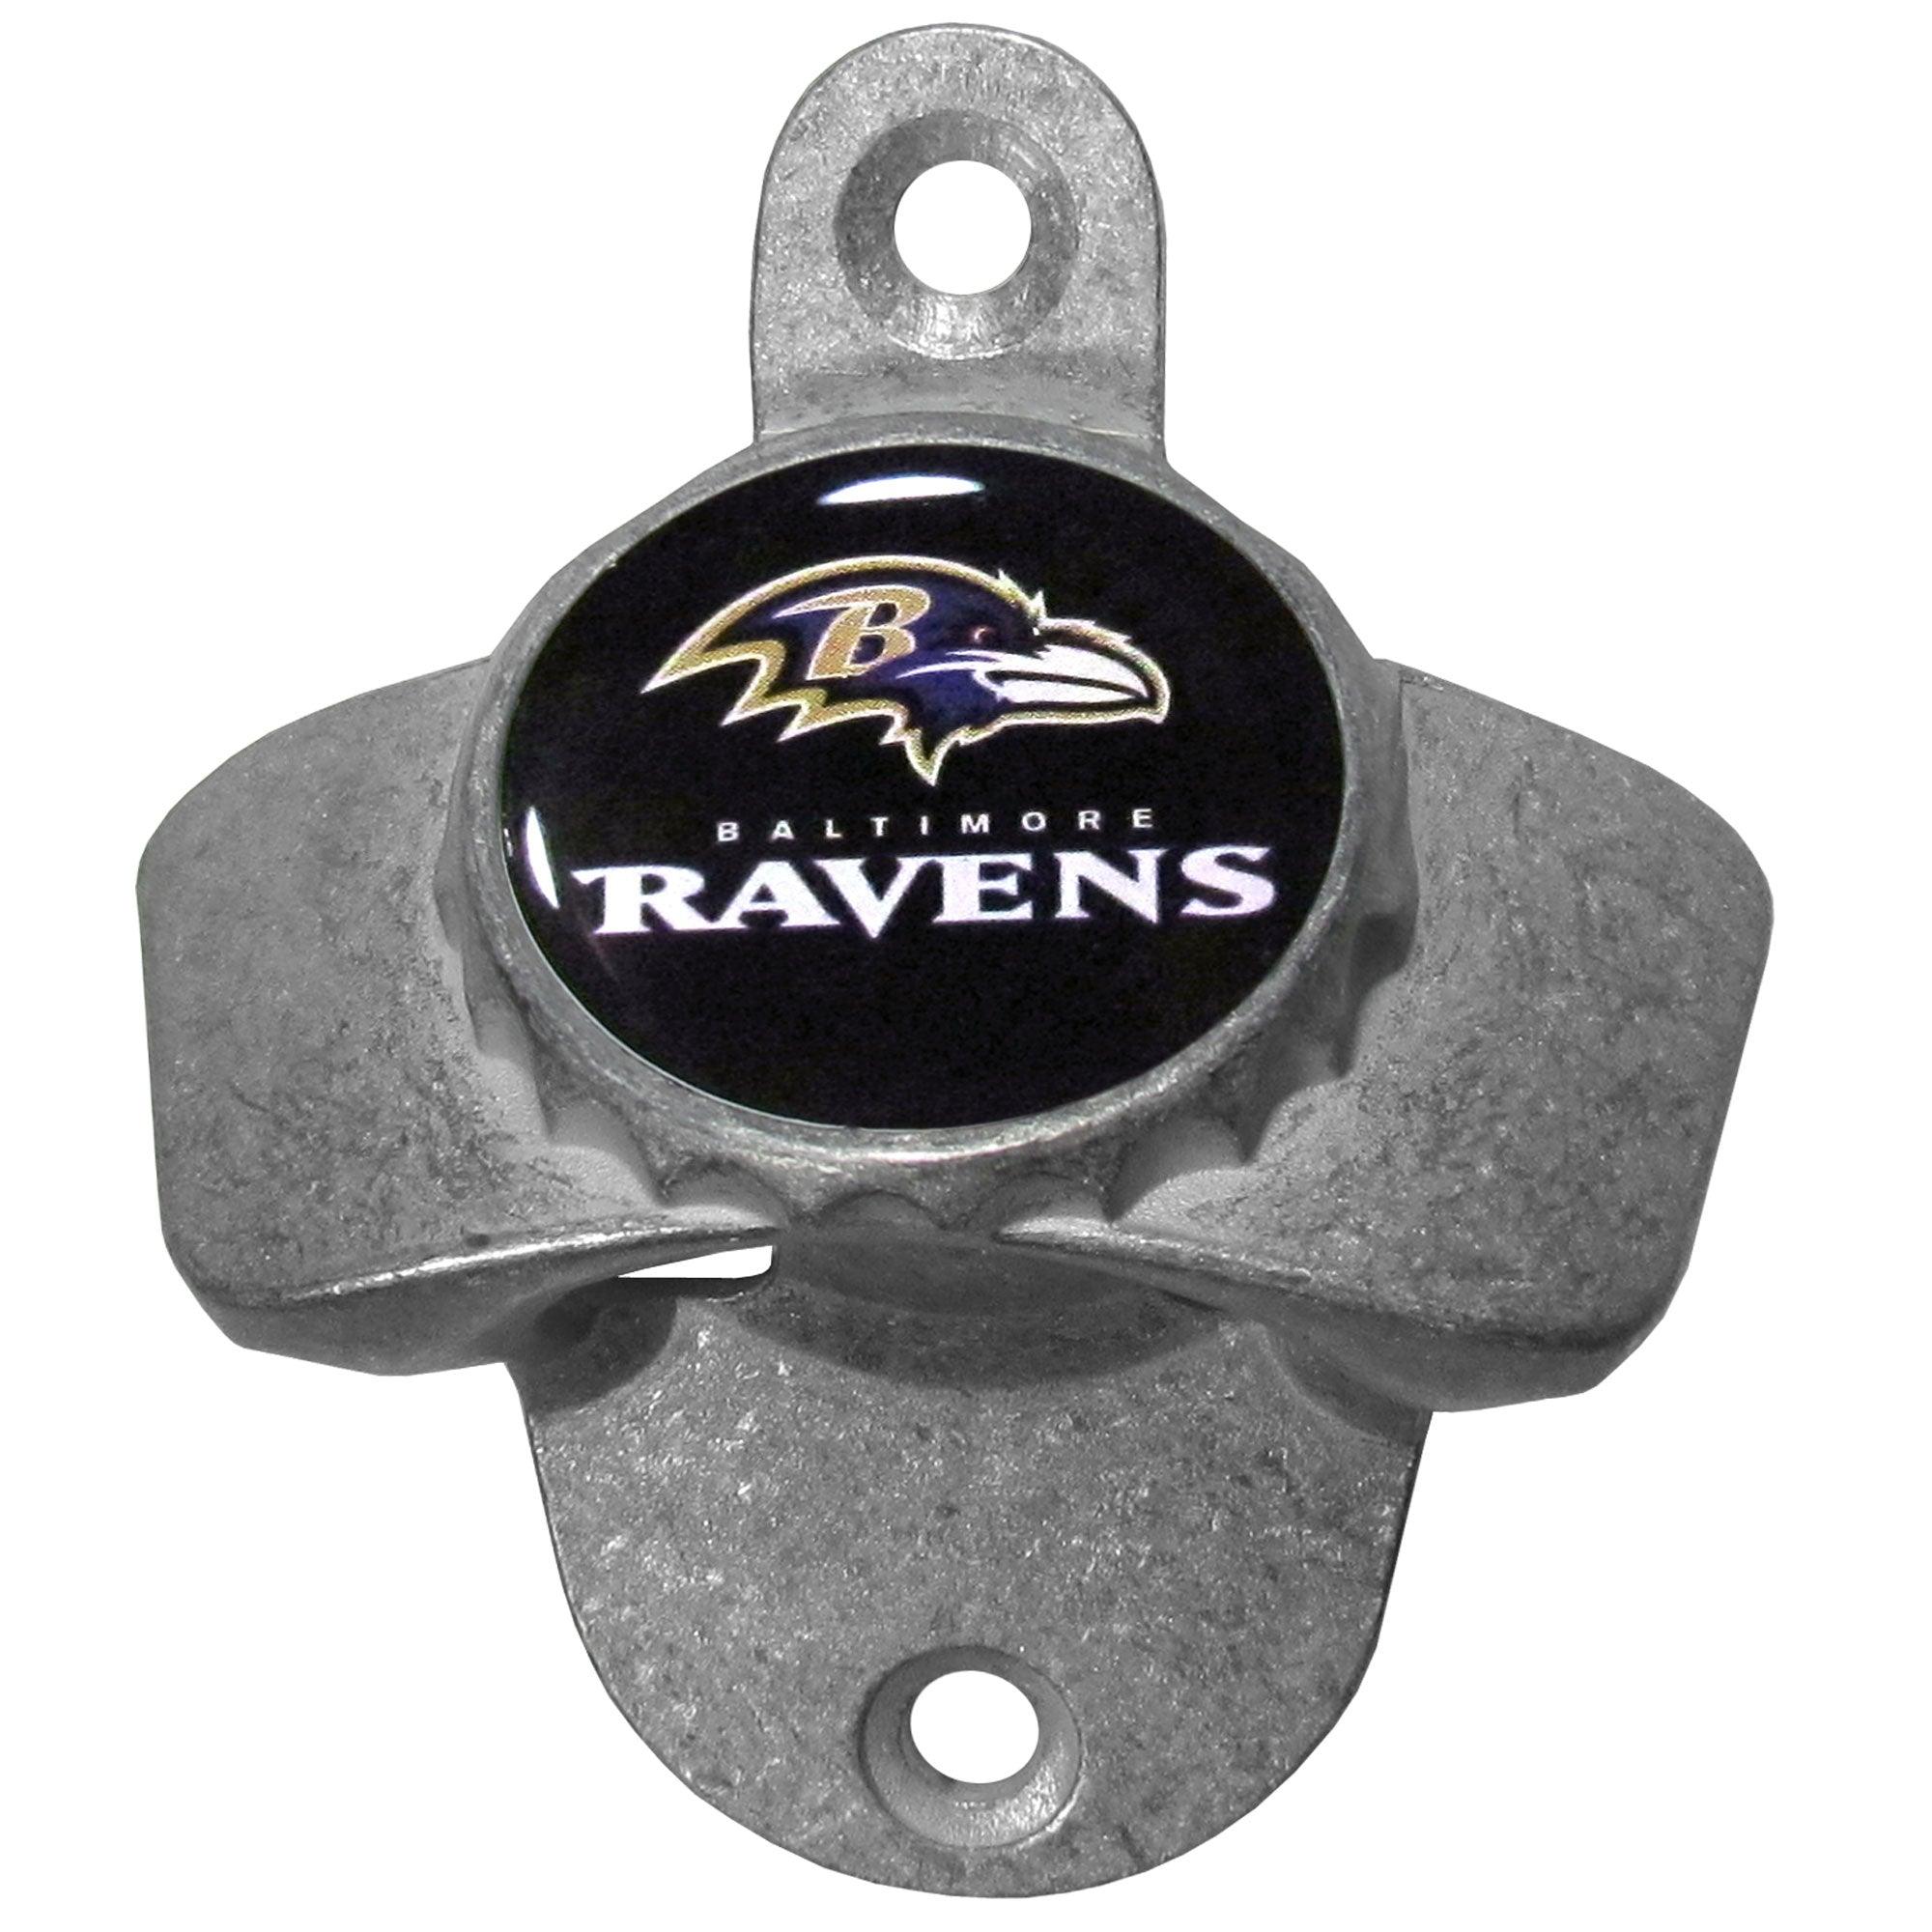 Baltimore Ravens Wall Mounted Bottle Opener - Flyclothing LLC